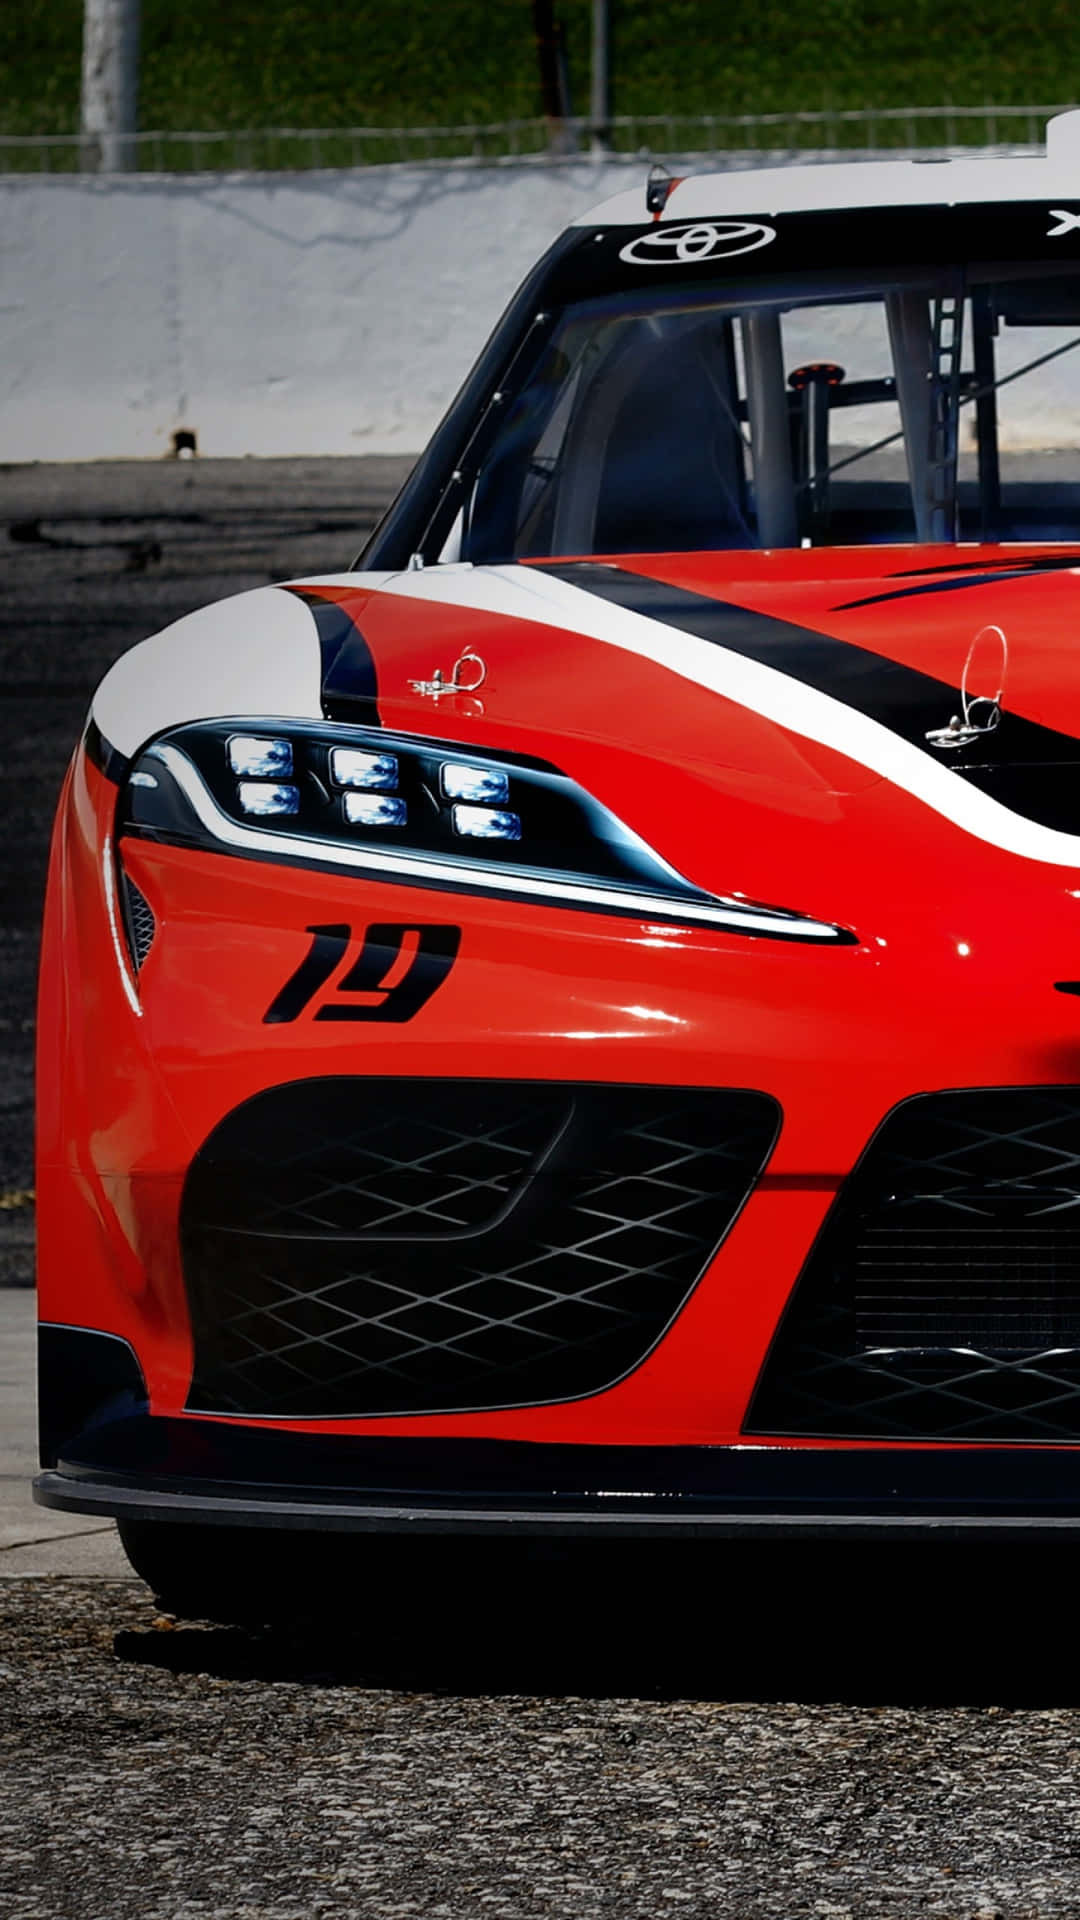 Paul Menards NASCAR Monster Energy Cup-seriens Chevrolet træder ind i sving 1 på Martinsville Speedway. Wallpaper